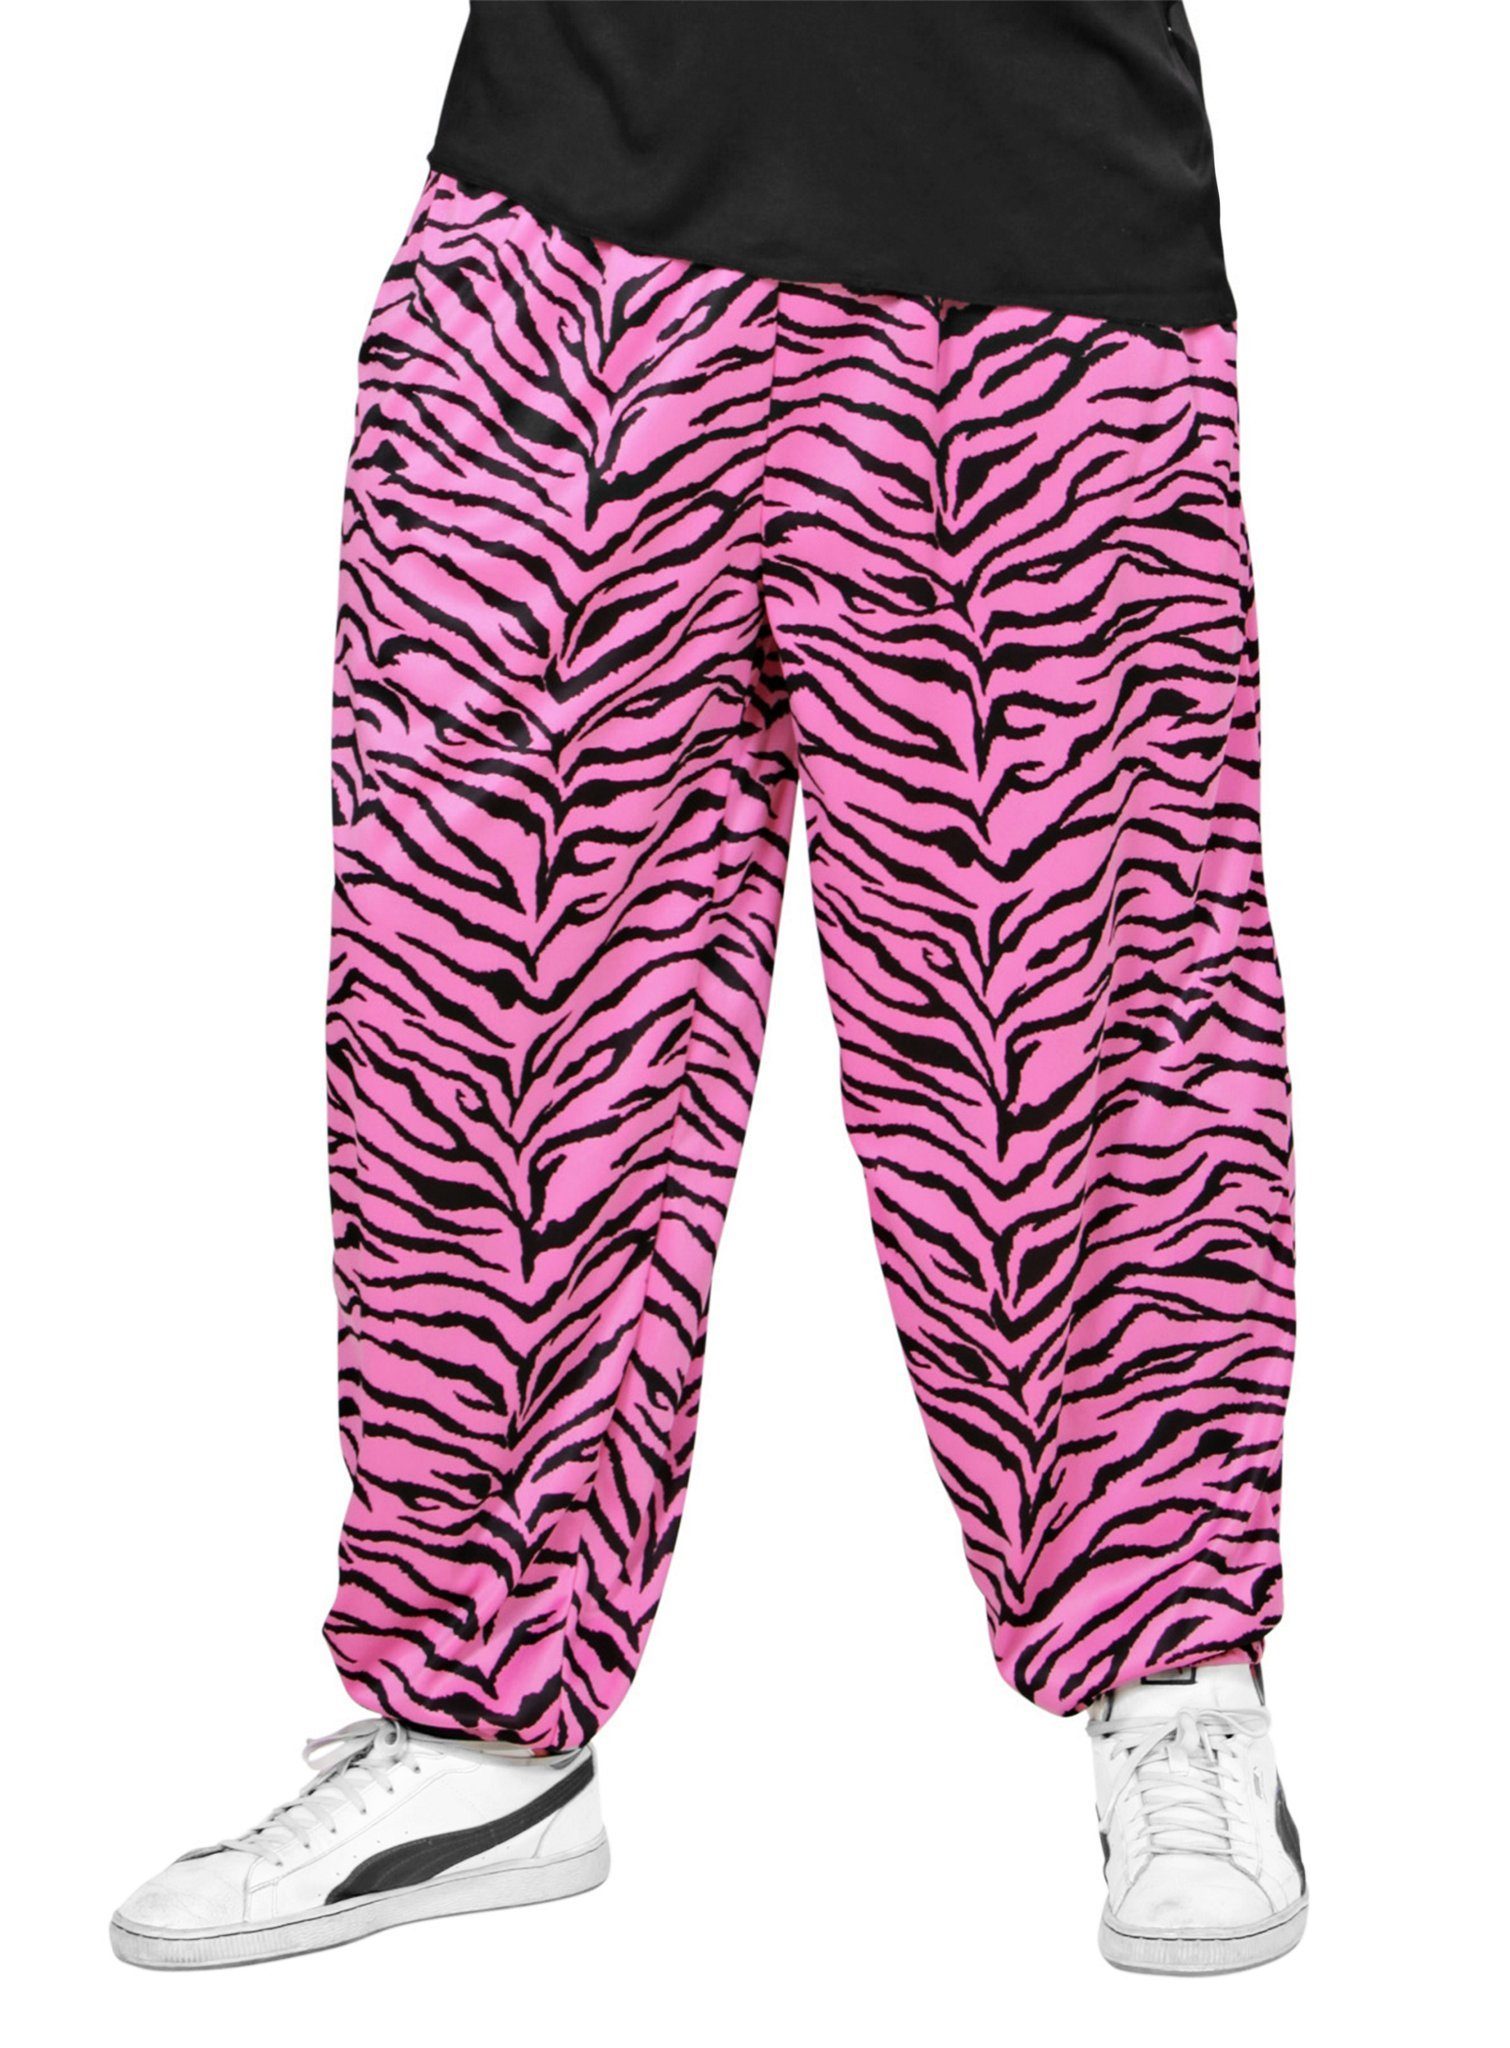 Widdmann Kostüm 80er Jogginghose Pink Tiger, 40